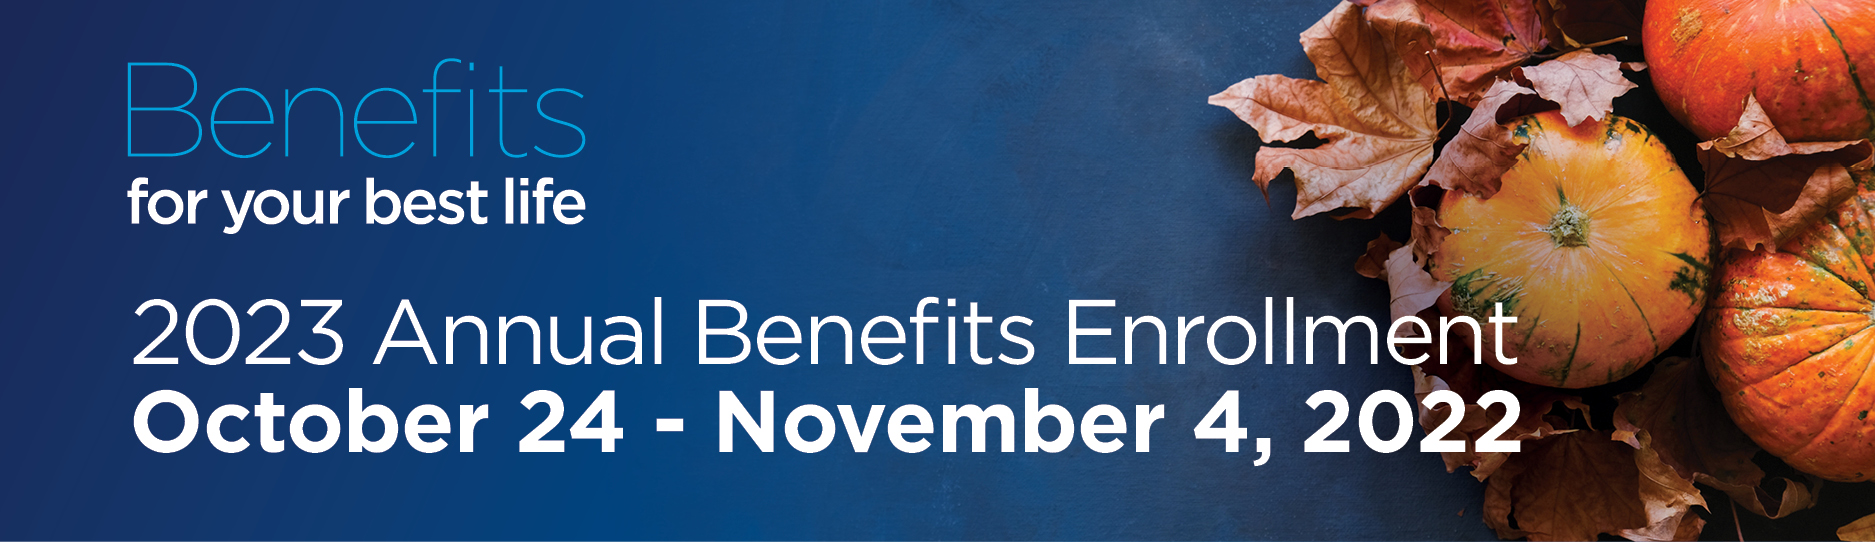 Benefits enrollment banner